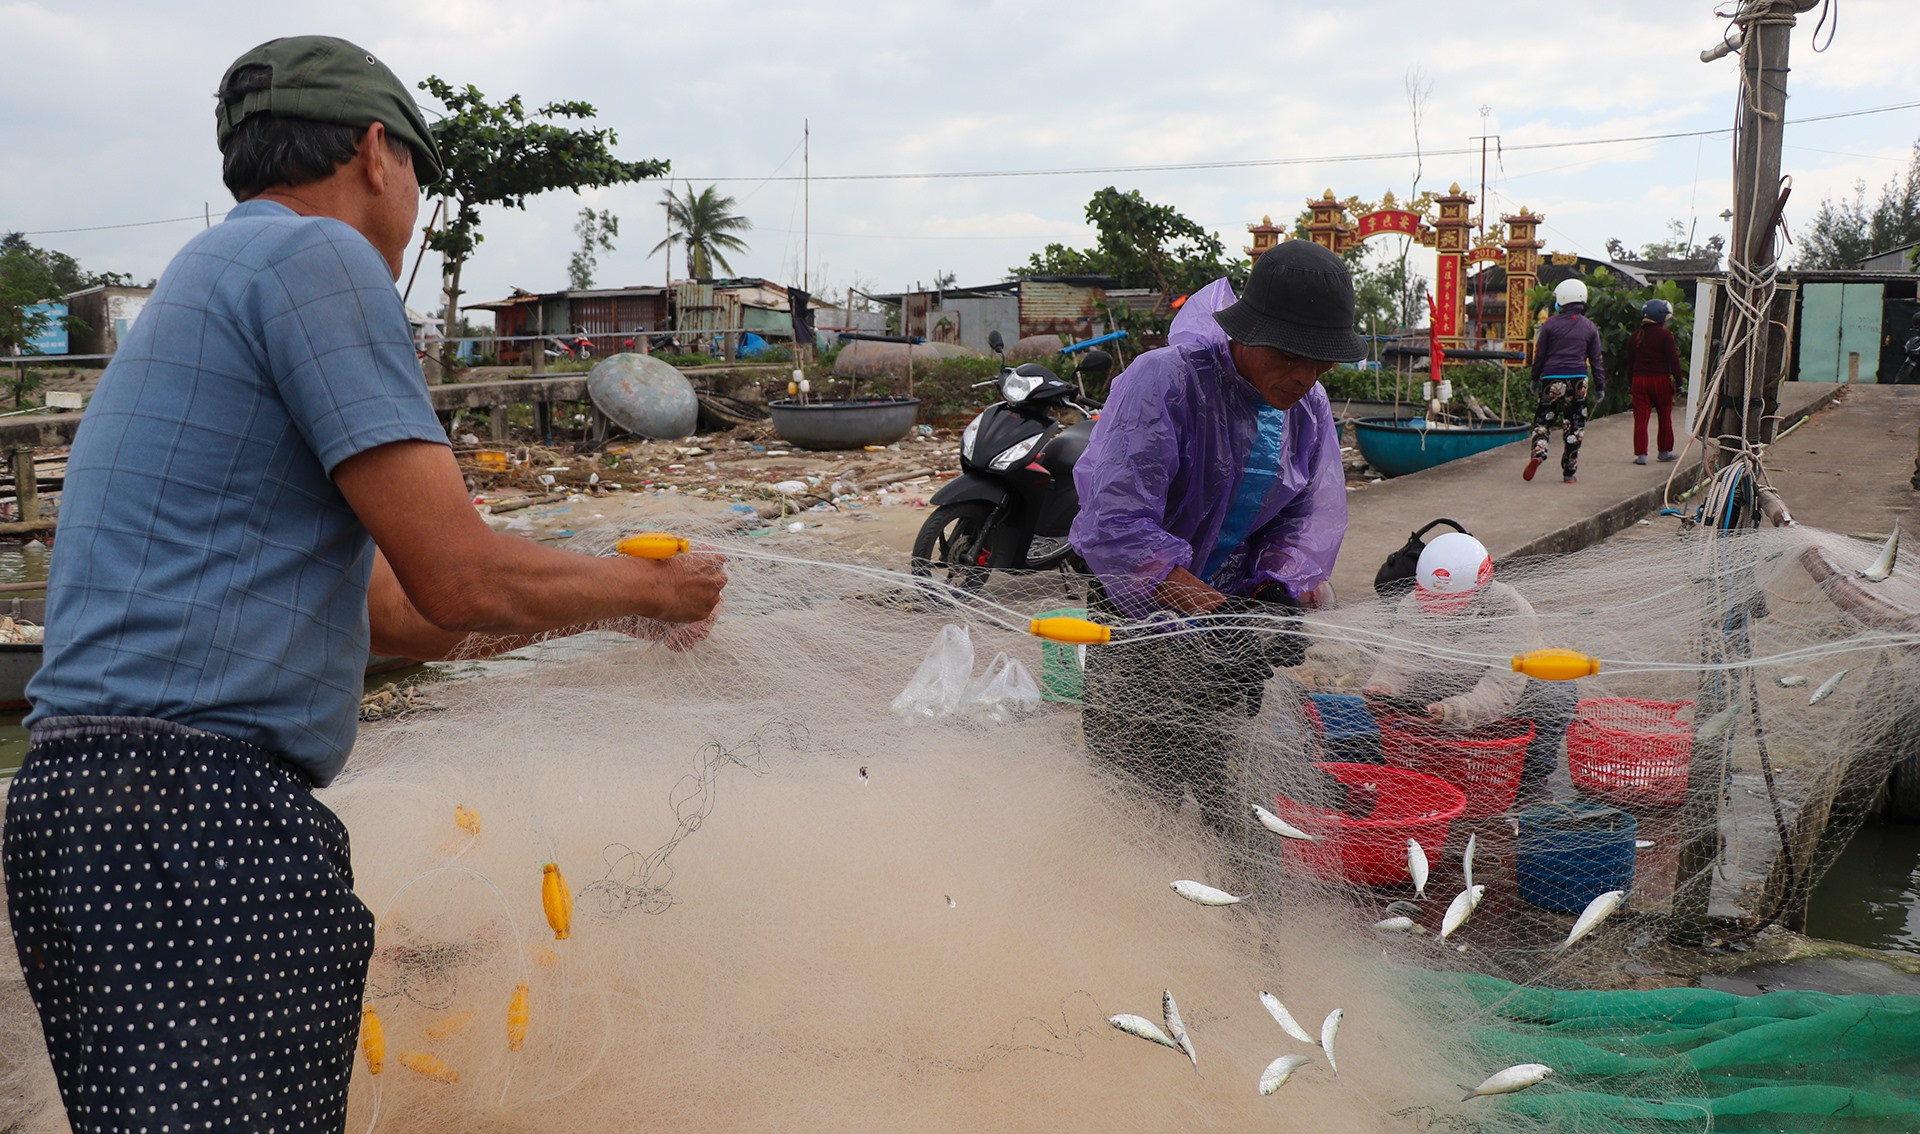 Ông Nguyễn Văn Ba, ngụ thôn 1, xã Duy Hải, cho biết ông cùng bạn thuyền ra biển từ 3h sáng. Chuyến biển gần khoảng 5 hải lý nên việc đánh bắt trong vòng vài giờ đồng hồ. Đến khoảng 10h thường ngày, tàu cập bờ và bắt đầu gỡ cá.